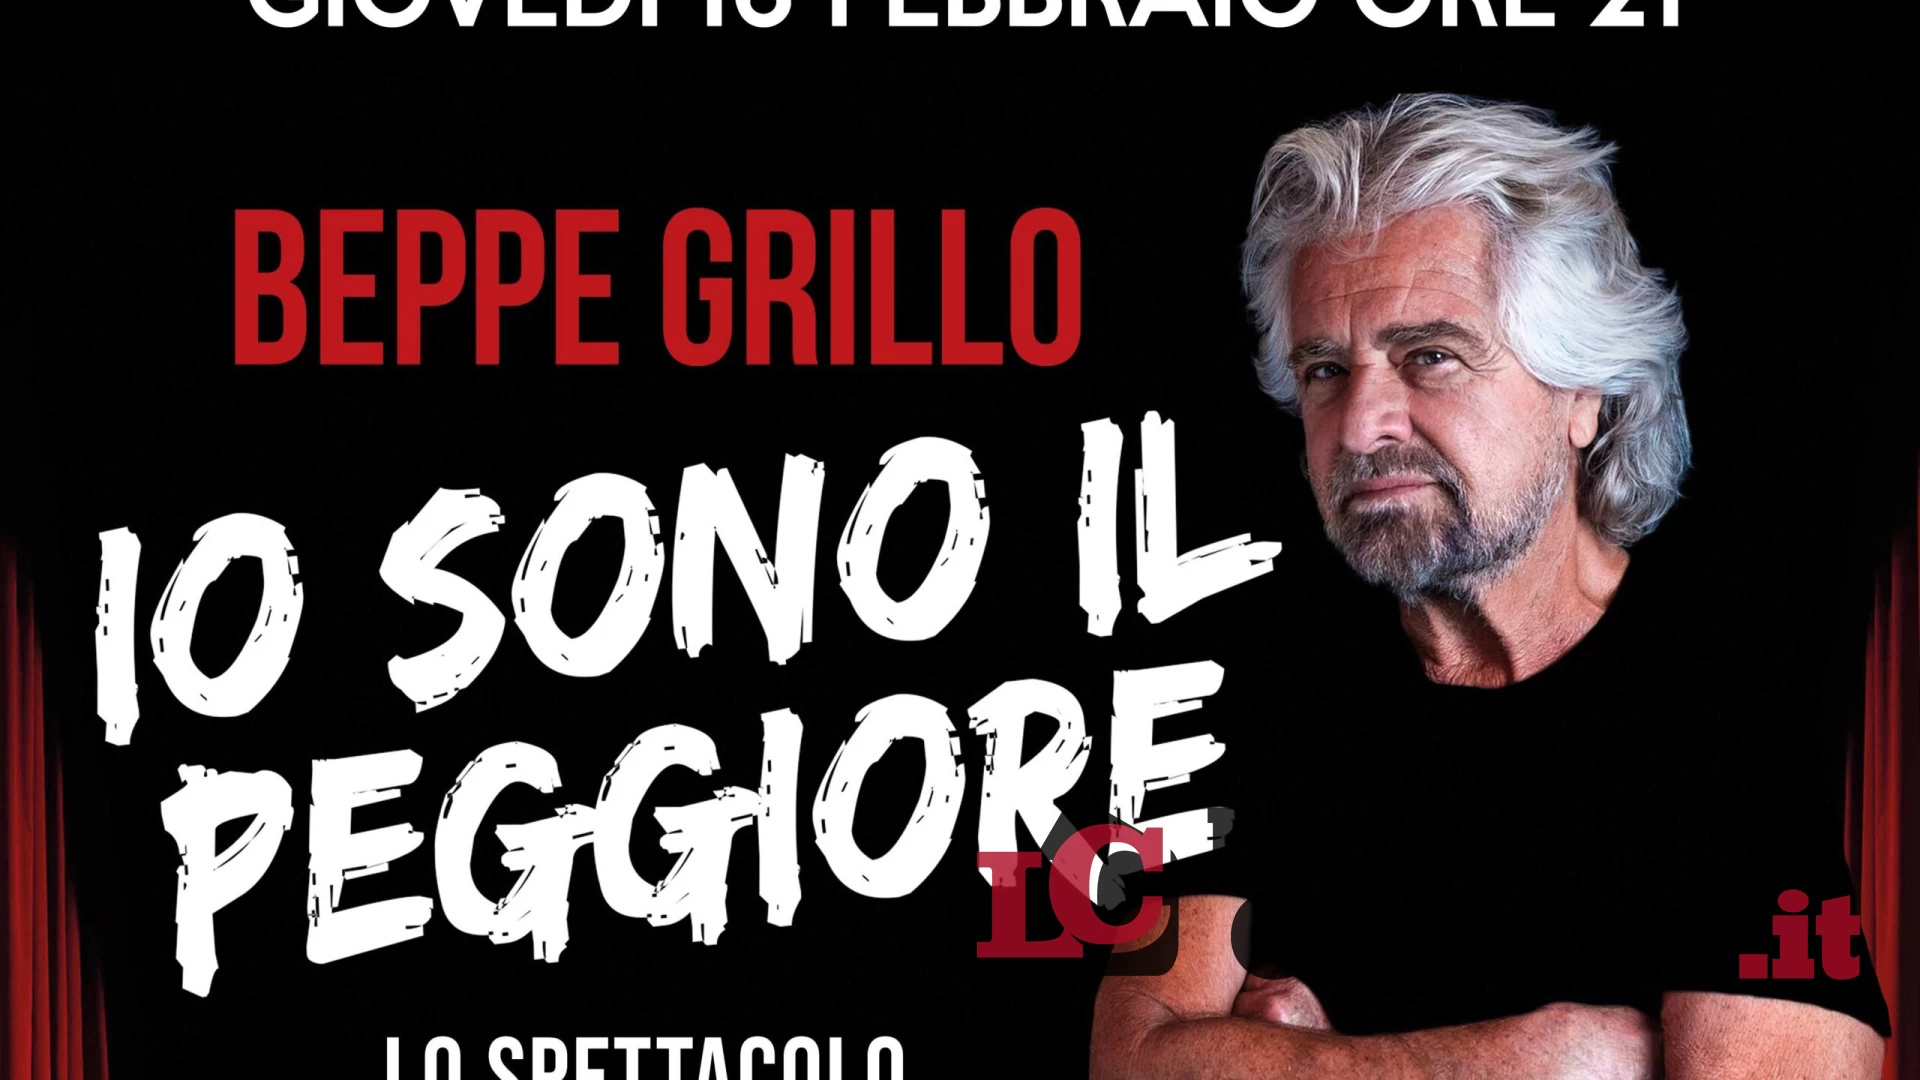 "Io sono il peggiore". Beppe Grillo in scena al teatro Manzoni di Cassino